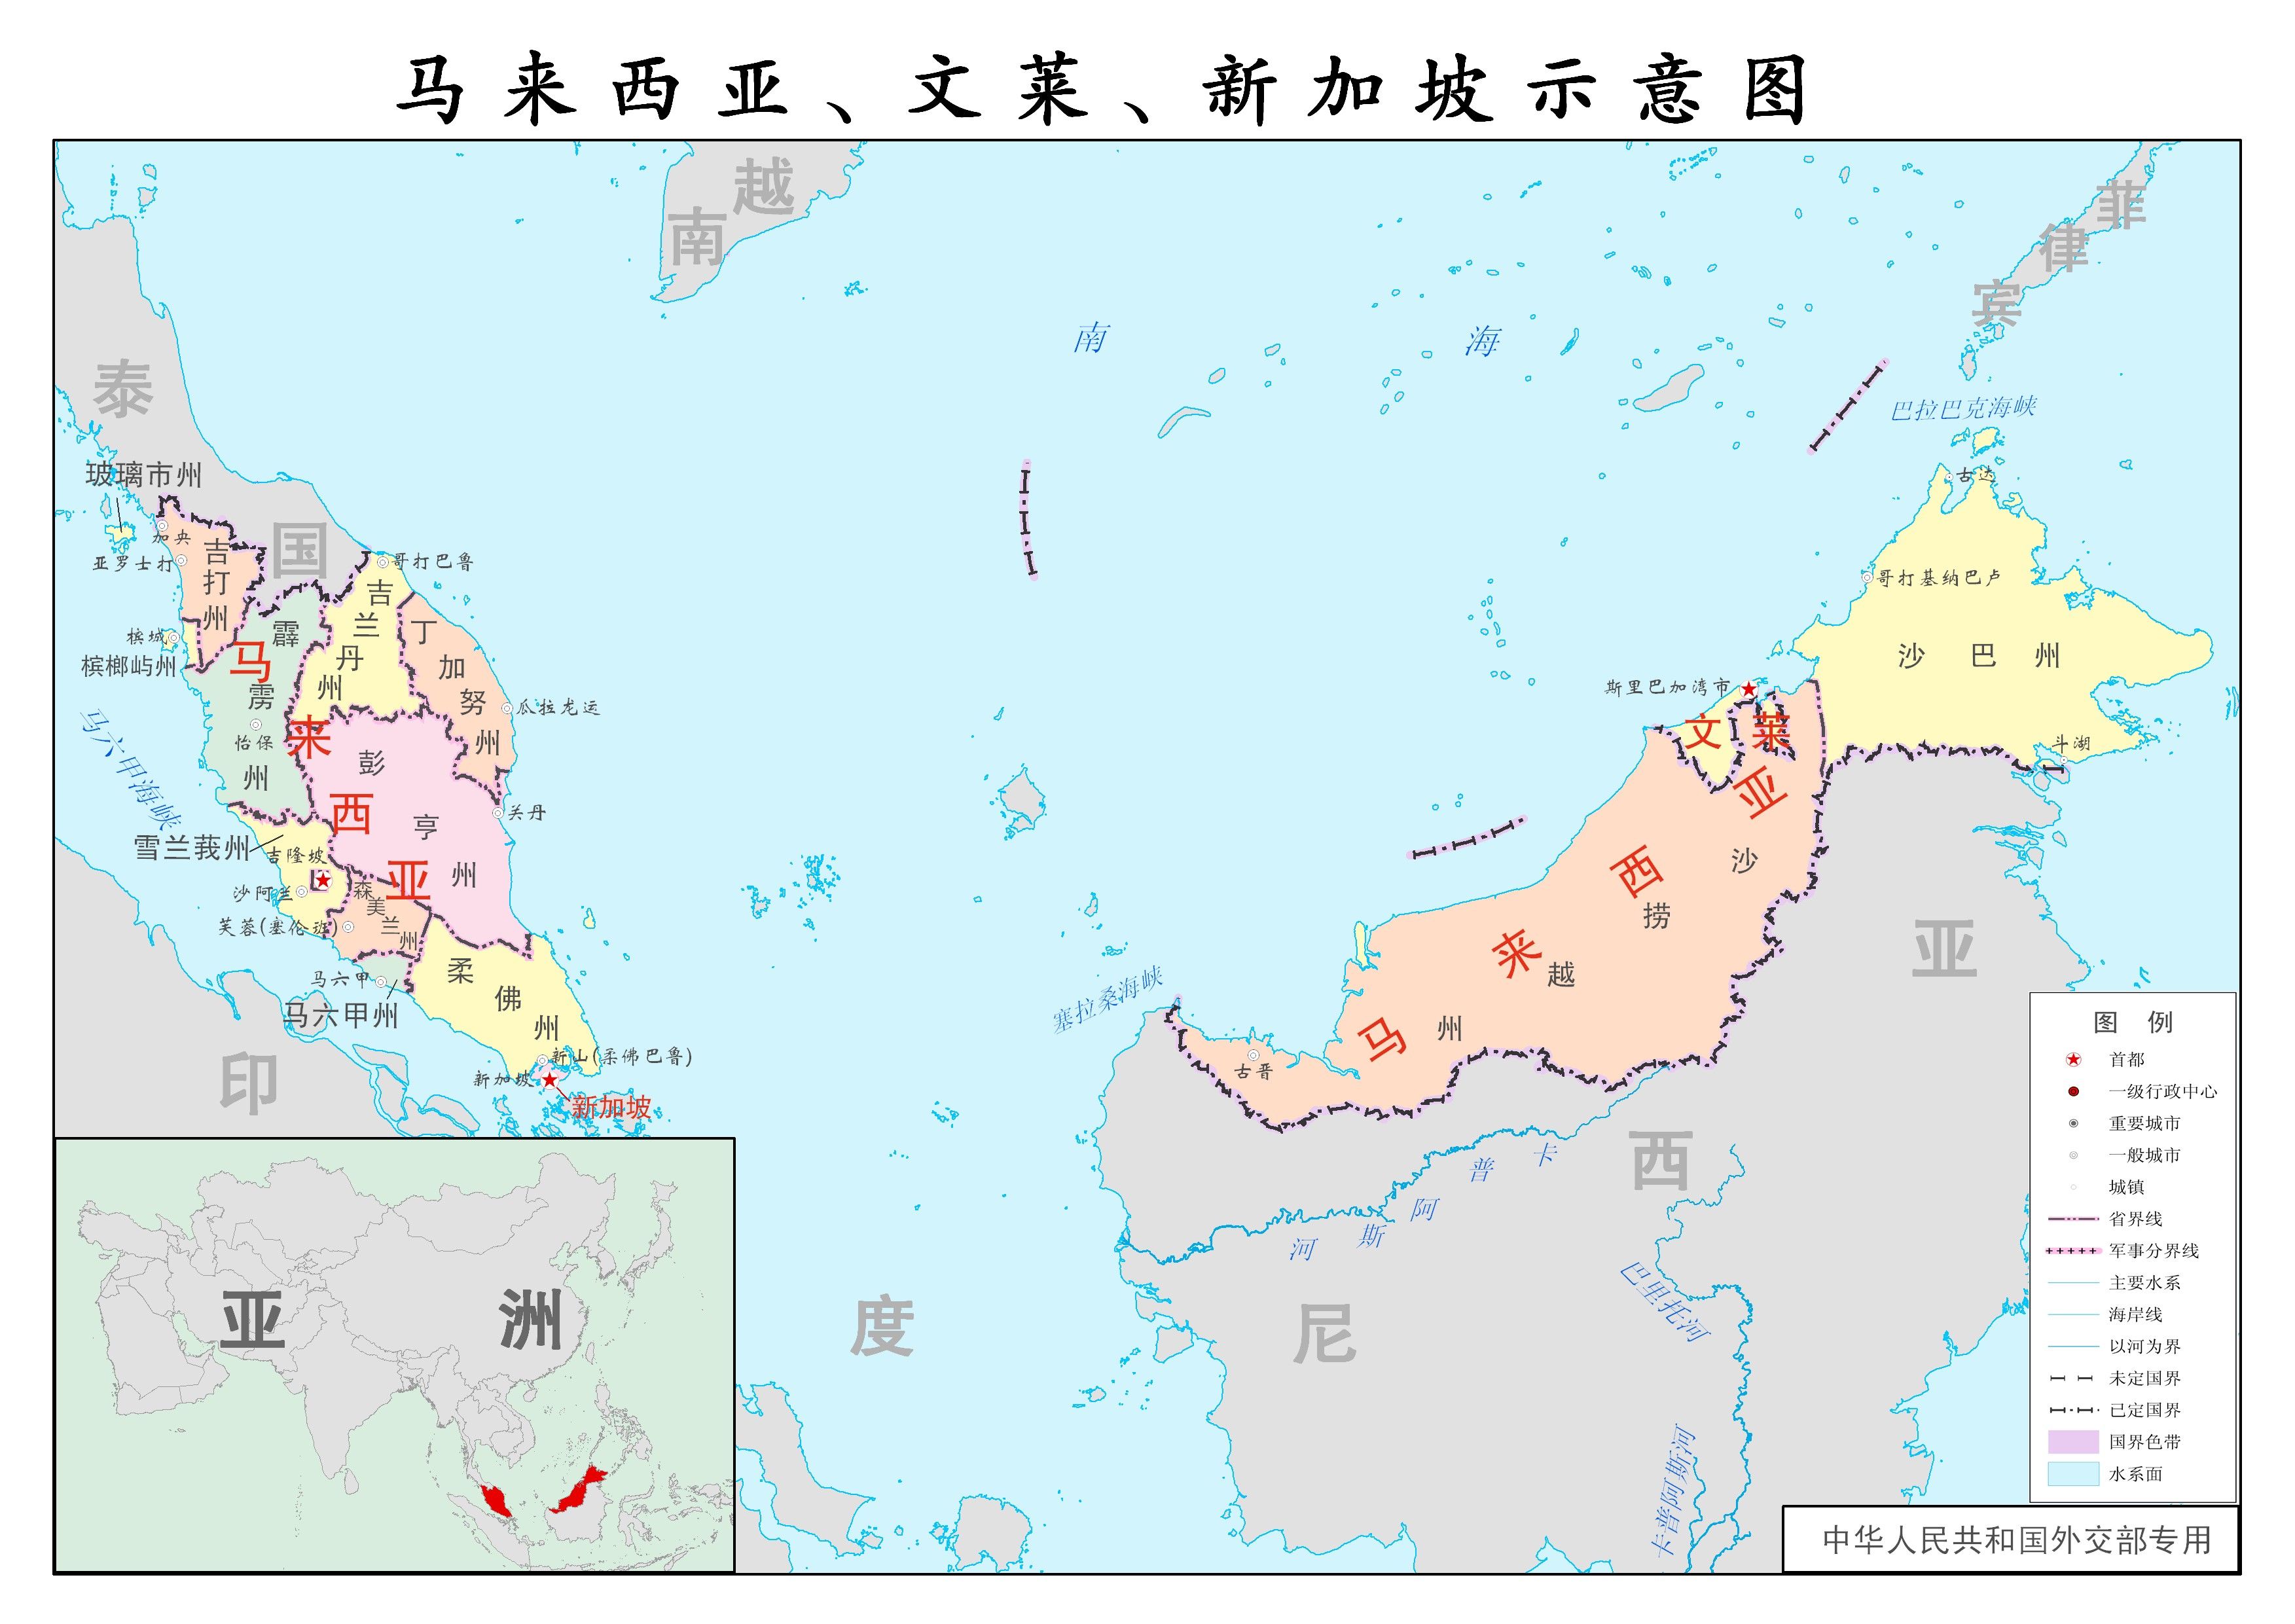 马来西亚的宜居性和中国有什么差异?需要注意什么?